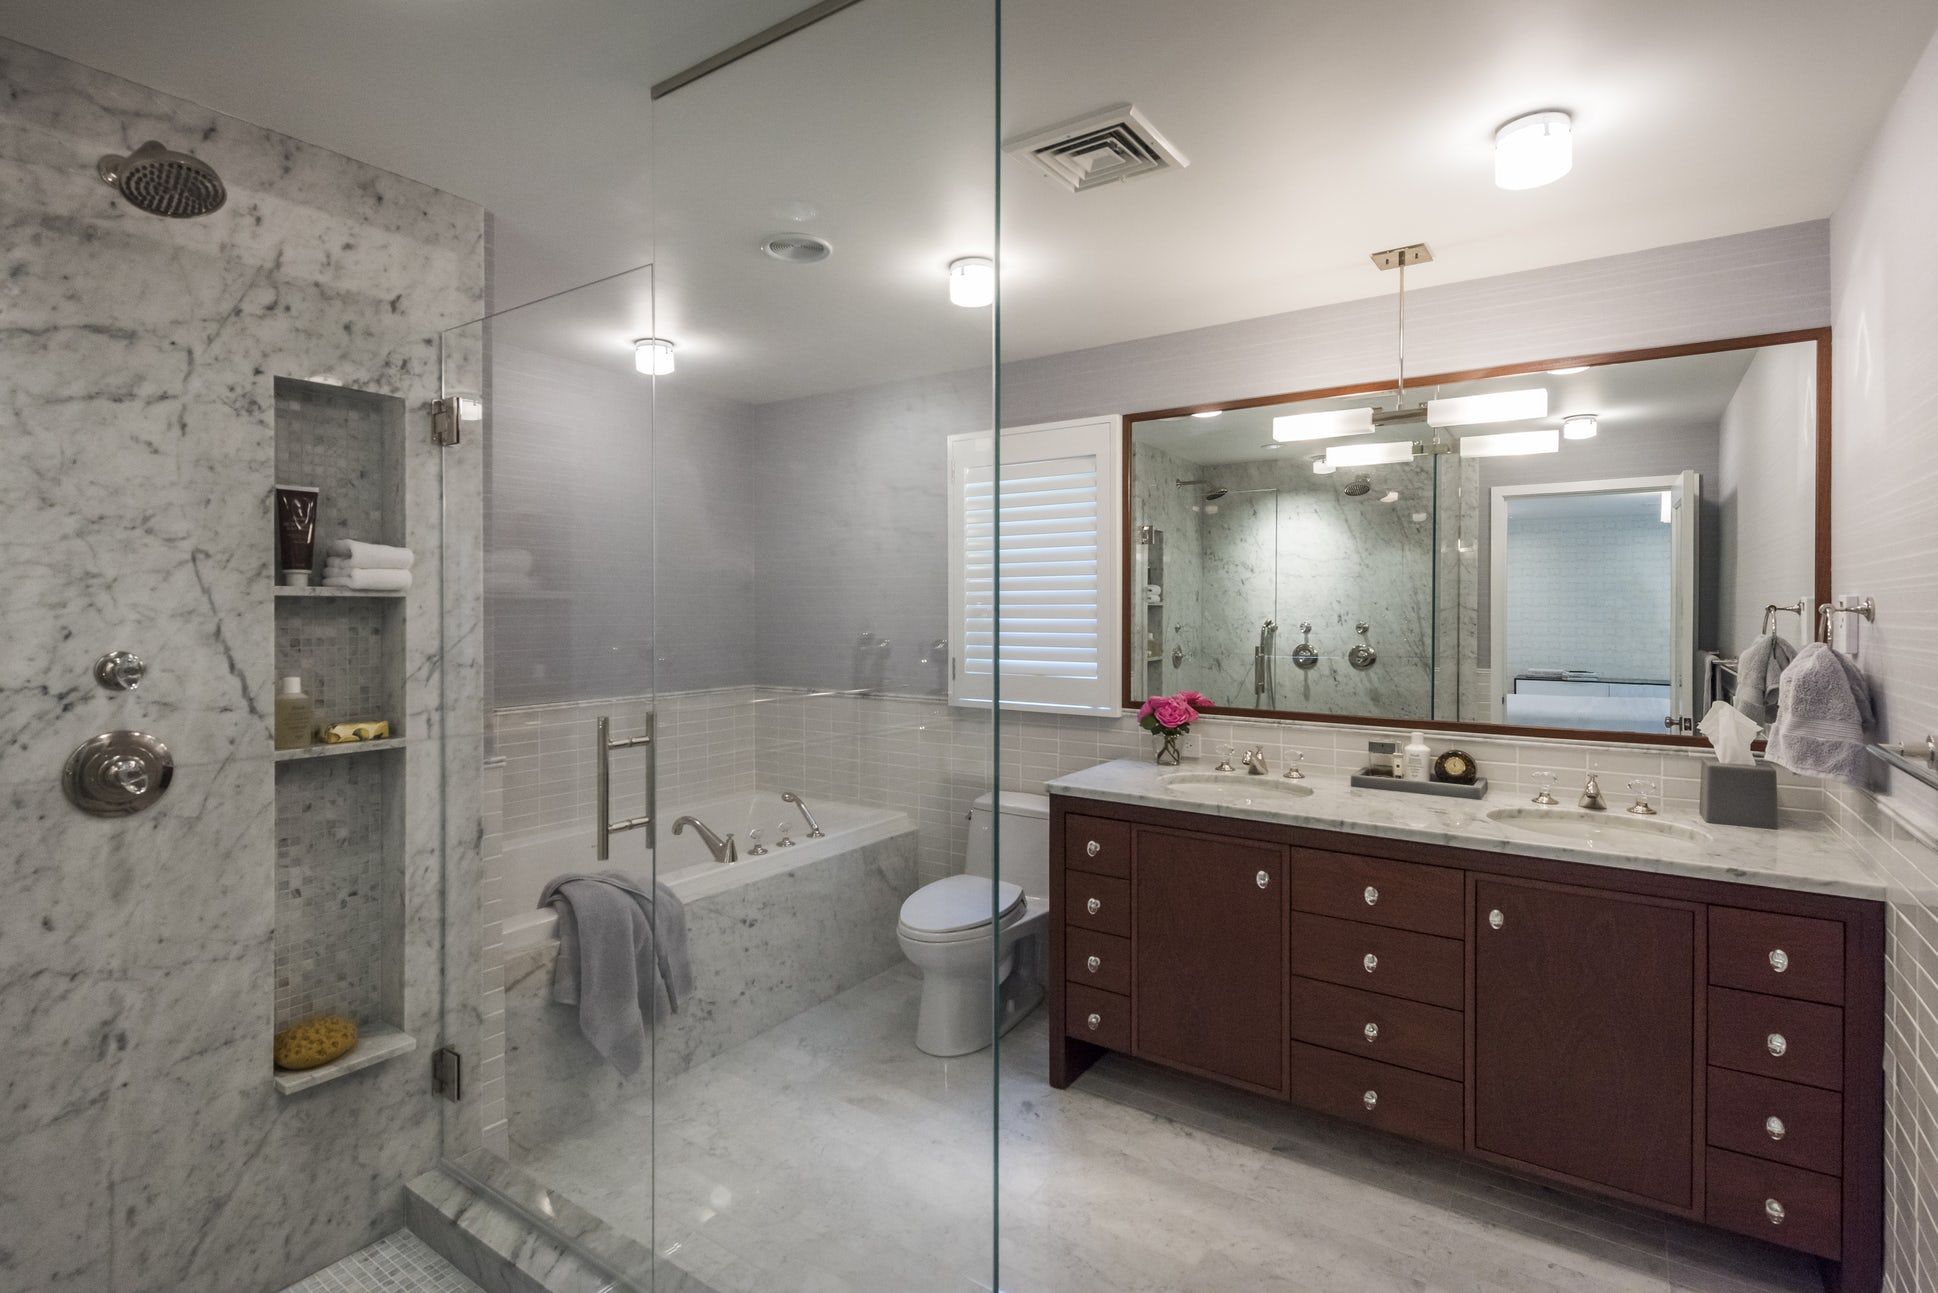 23 Marble Bathroom Ideas Stunning Baths With Marble Tile Tubs